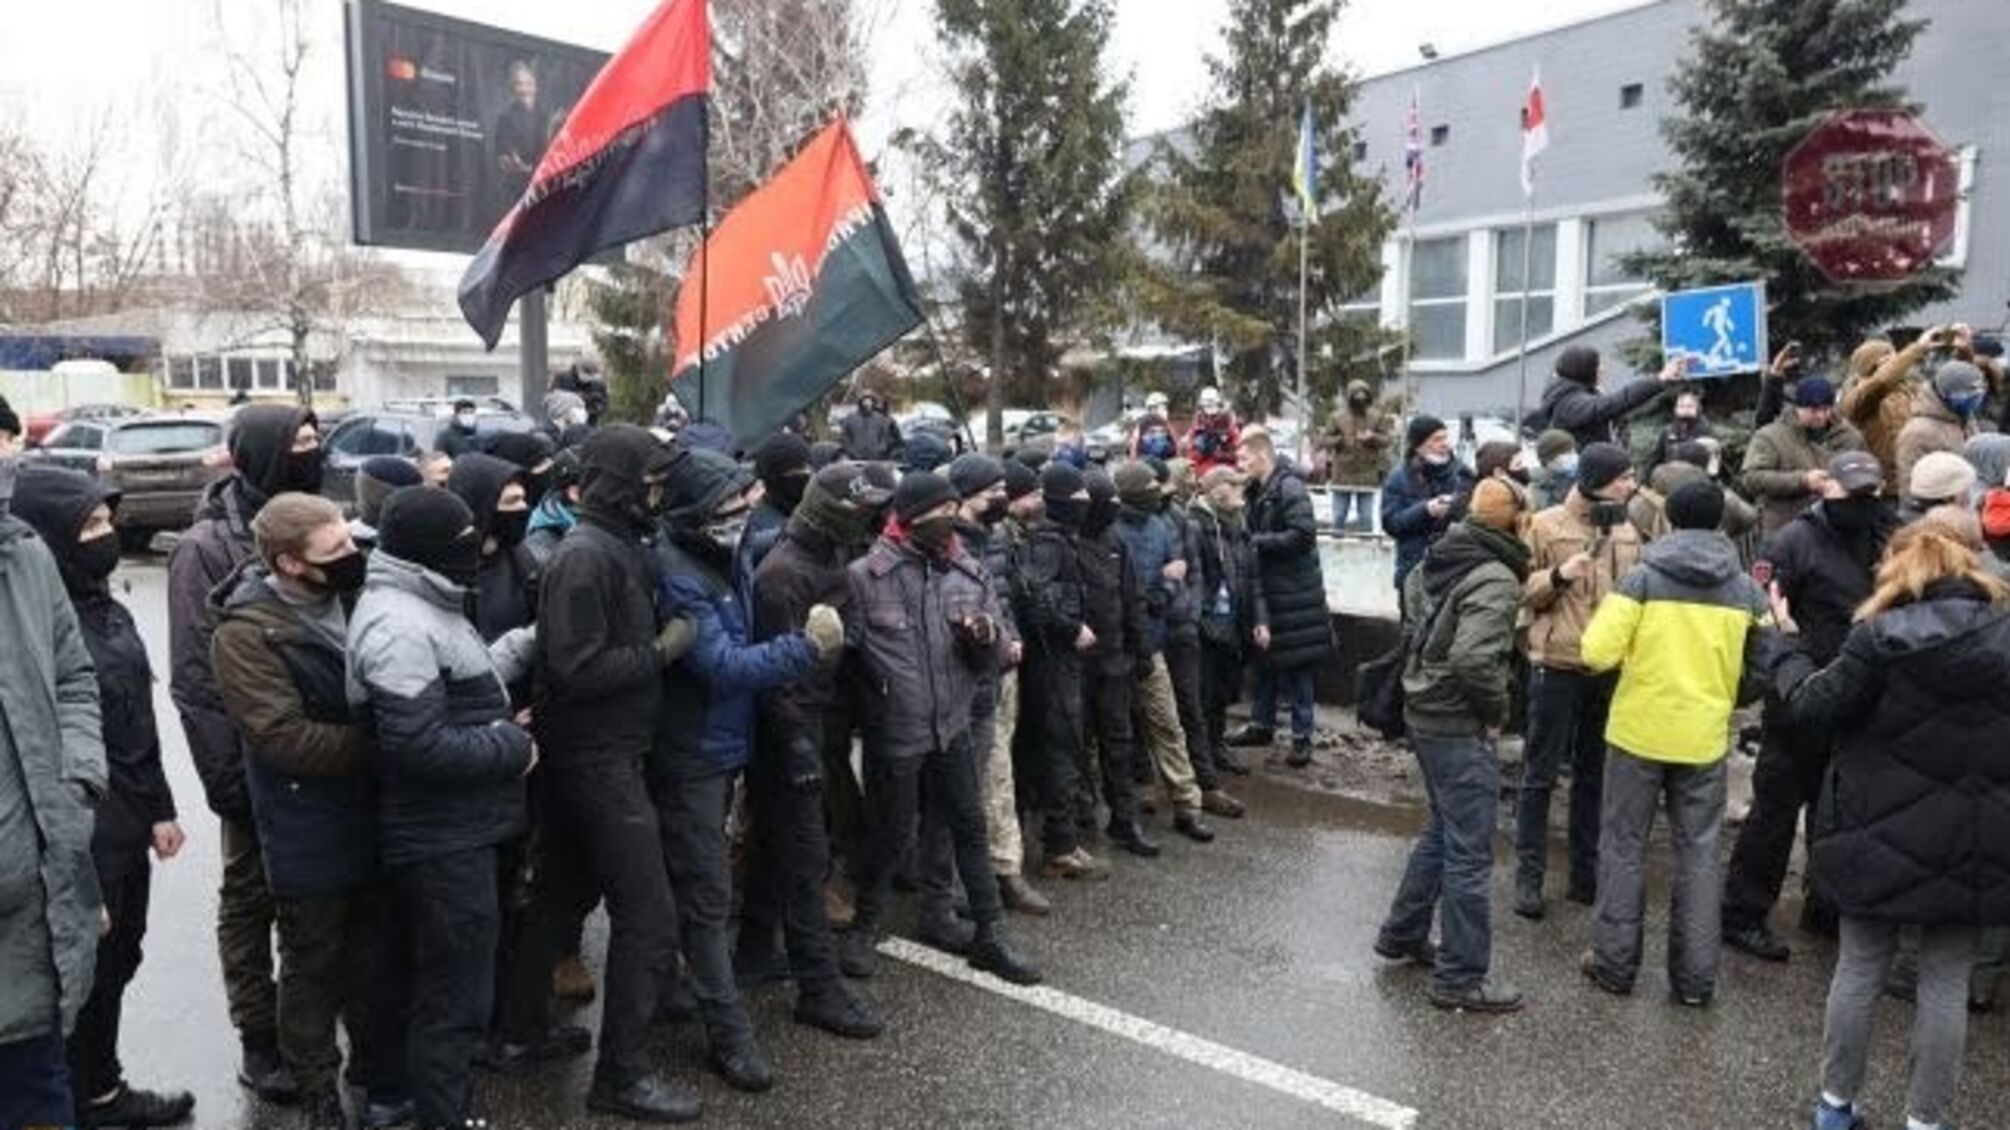 Дело дошло до драки: в столице началась акция протеста под телеканалом 'НАШ' (фото, видео)